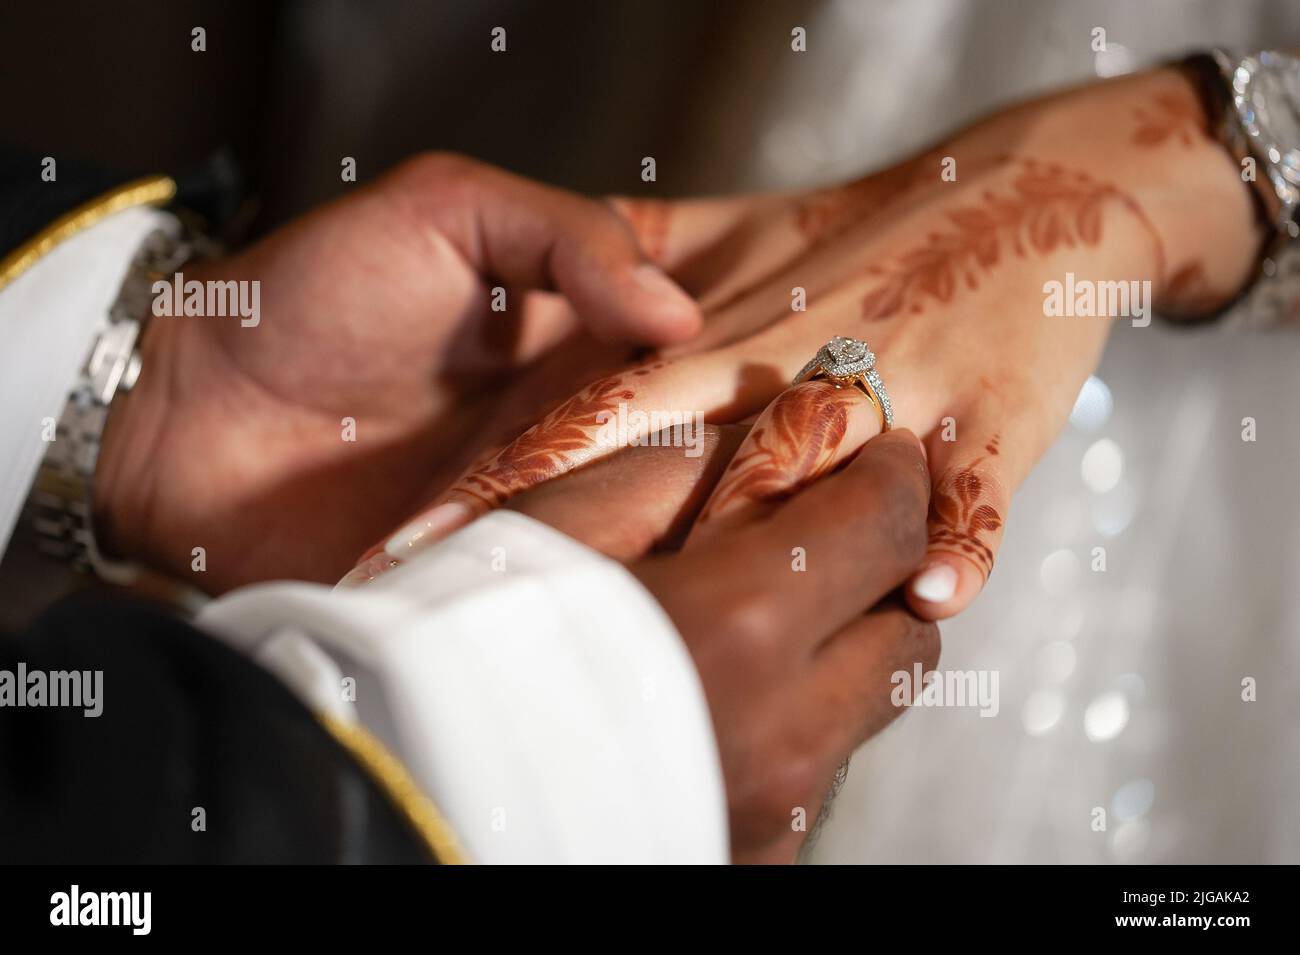 La main de l'homme glisse l'anneau en forme de goutte d'eau sur le doigt de la femme. Mariage arabe avec marié portant bishté sur les mains de kandora et de mariée avec tatouage de henné. Banque D'Images